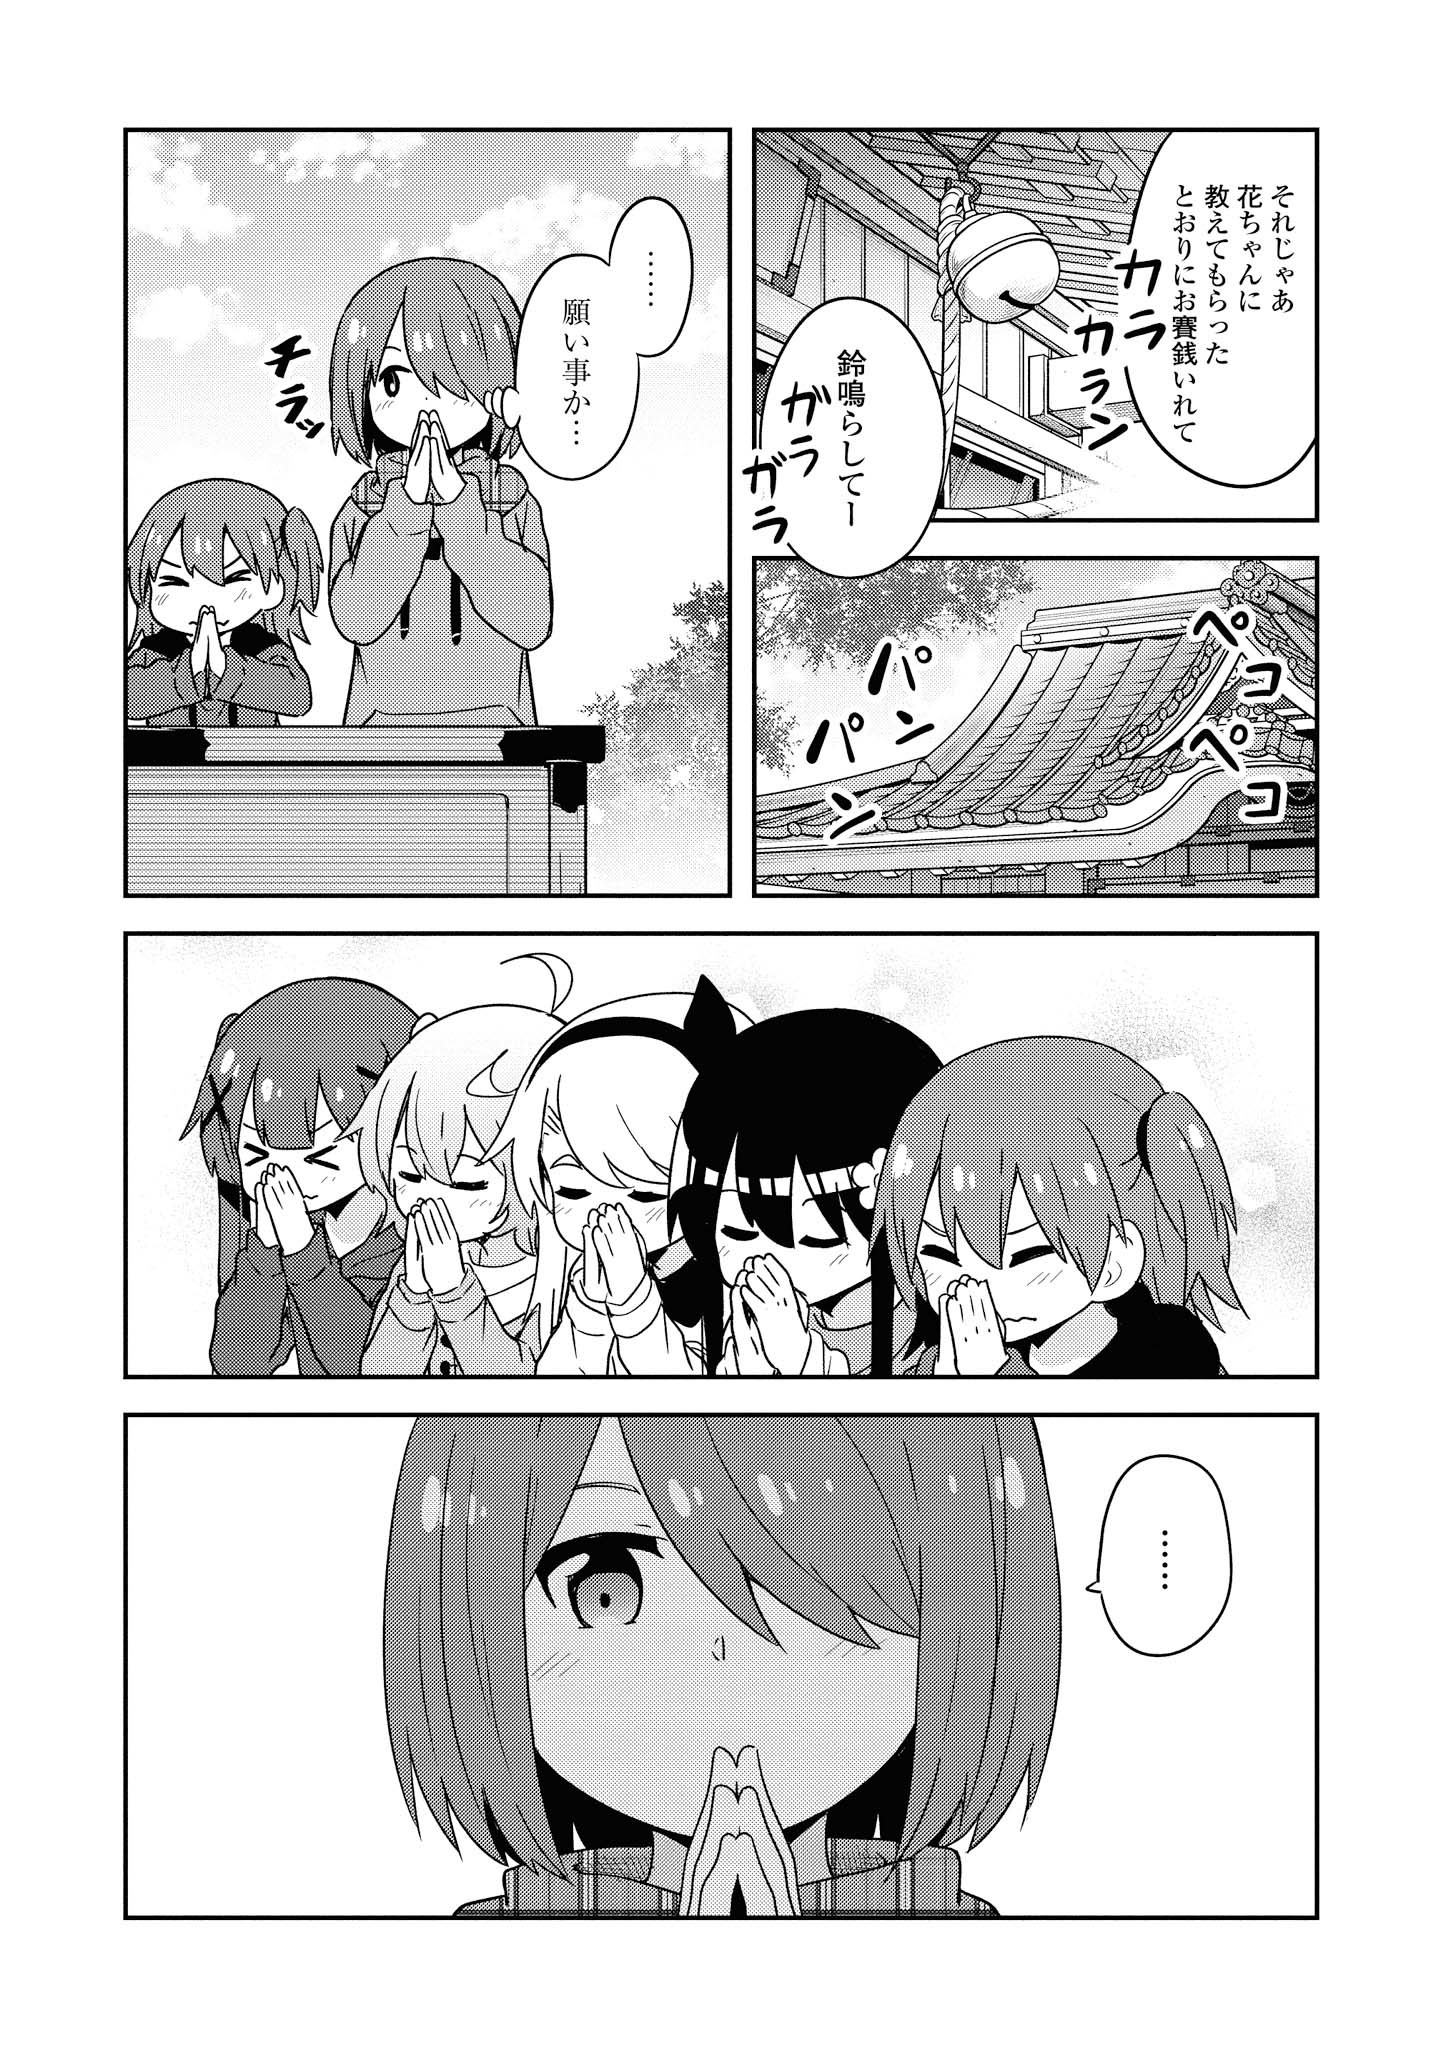 Watashi ni Tenshi ga Maiorita! - Chapter 48 - Page 15